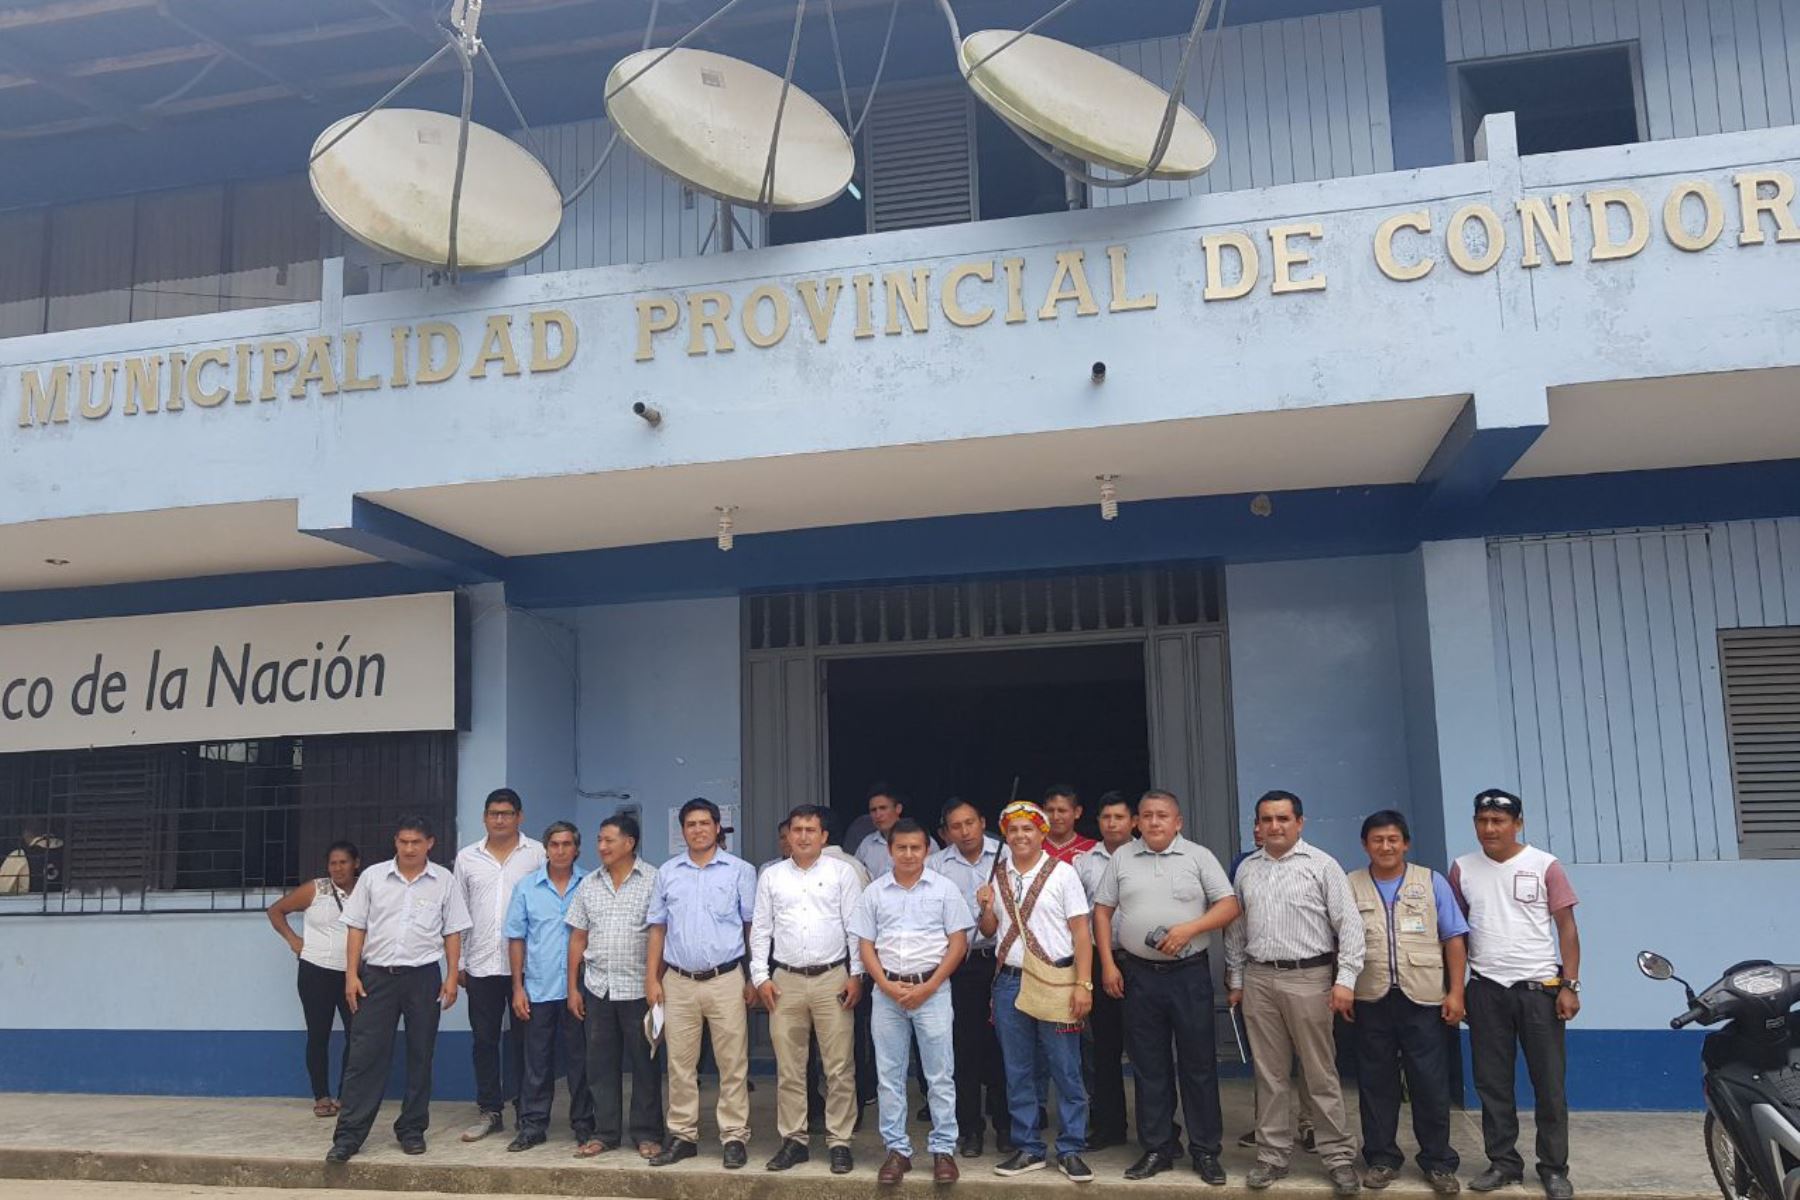 La primera Oficina Descentralizada de Coordinación Territorial de la Dirección Regional Terrestre y Comunicaciones, dependiente del MTC, se inauguró en la provincia de Condorcanqui, región Amazonas, en beneficio de más de 900 transportistas terrestres y fluviales